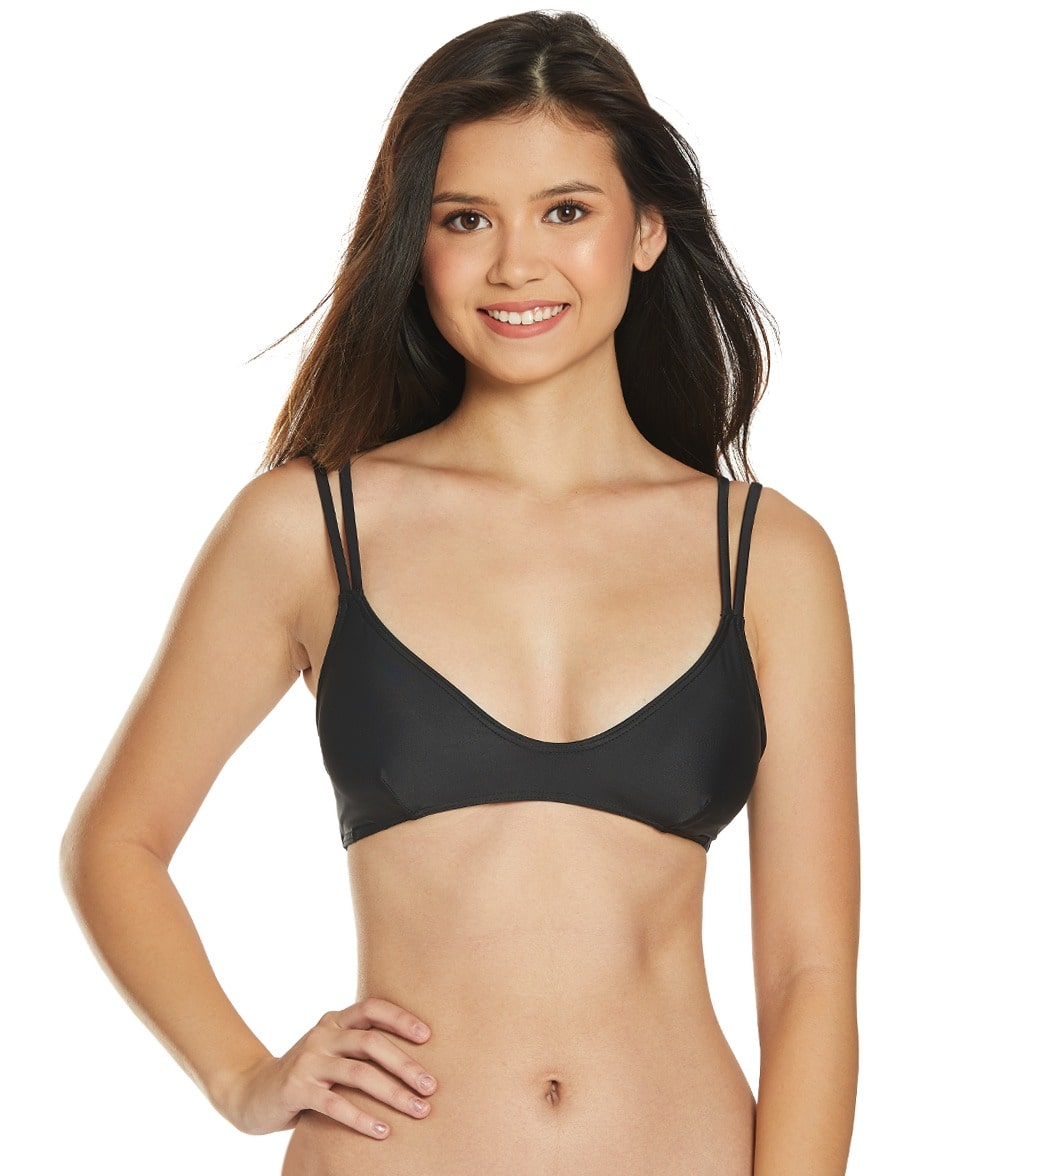 Sisstrevolution Neyla Bralette Bikini Top - Black Large - Swimoutlet.com